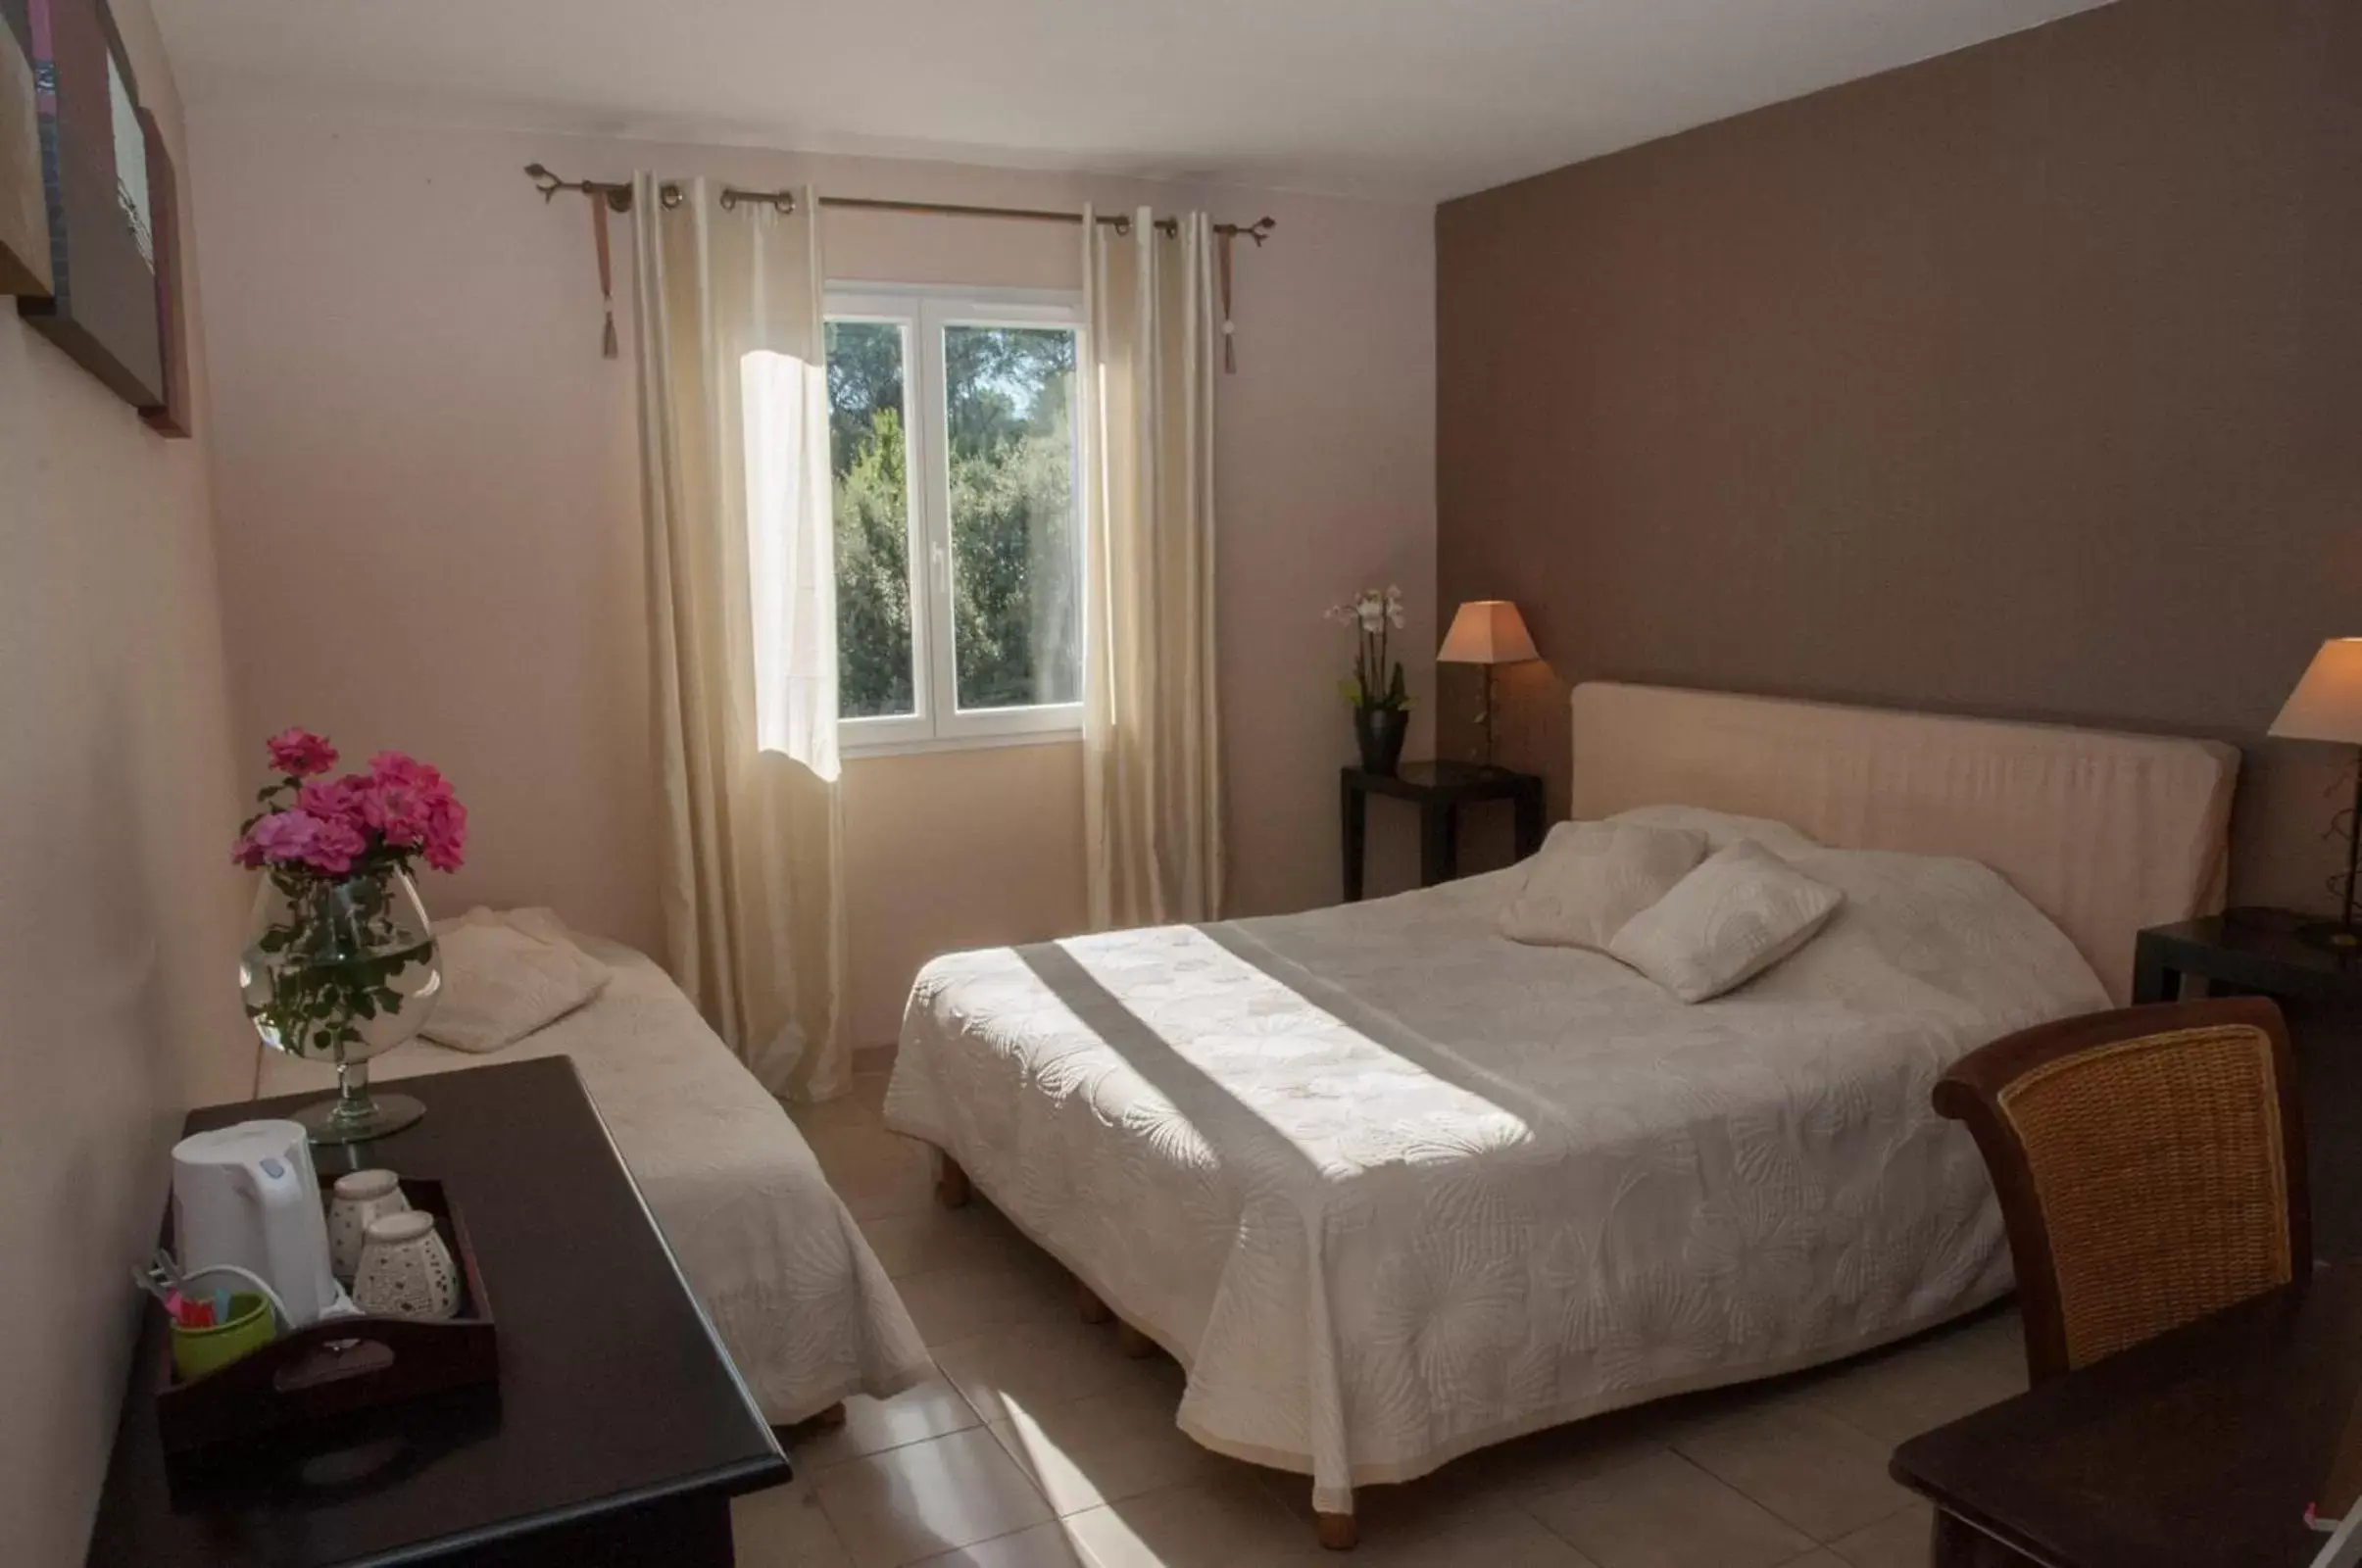 Bedroom, Room Photo in Le Mas Pinède